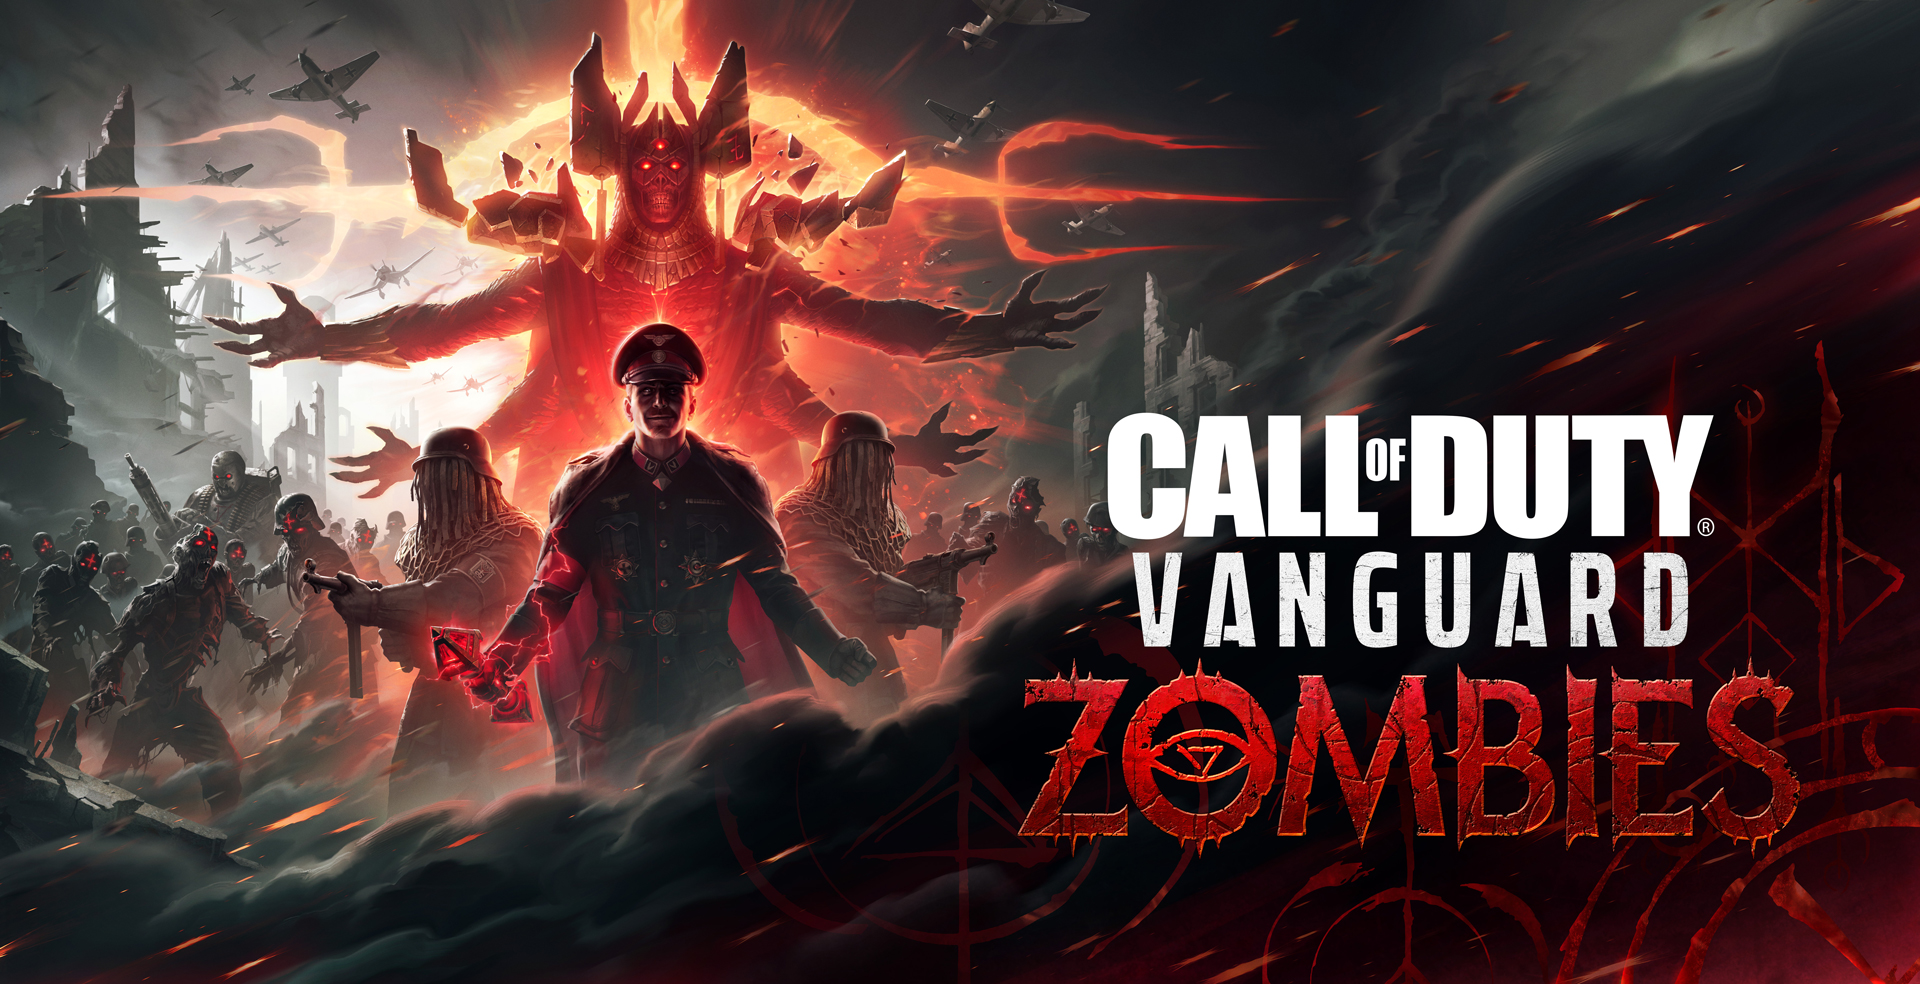 Il trailer di Call of Duty: Vanguard Zombies è apparso dopo un leak.